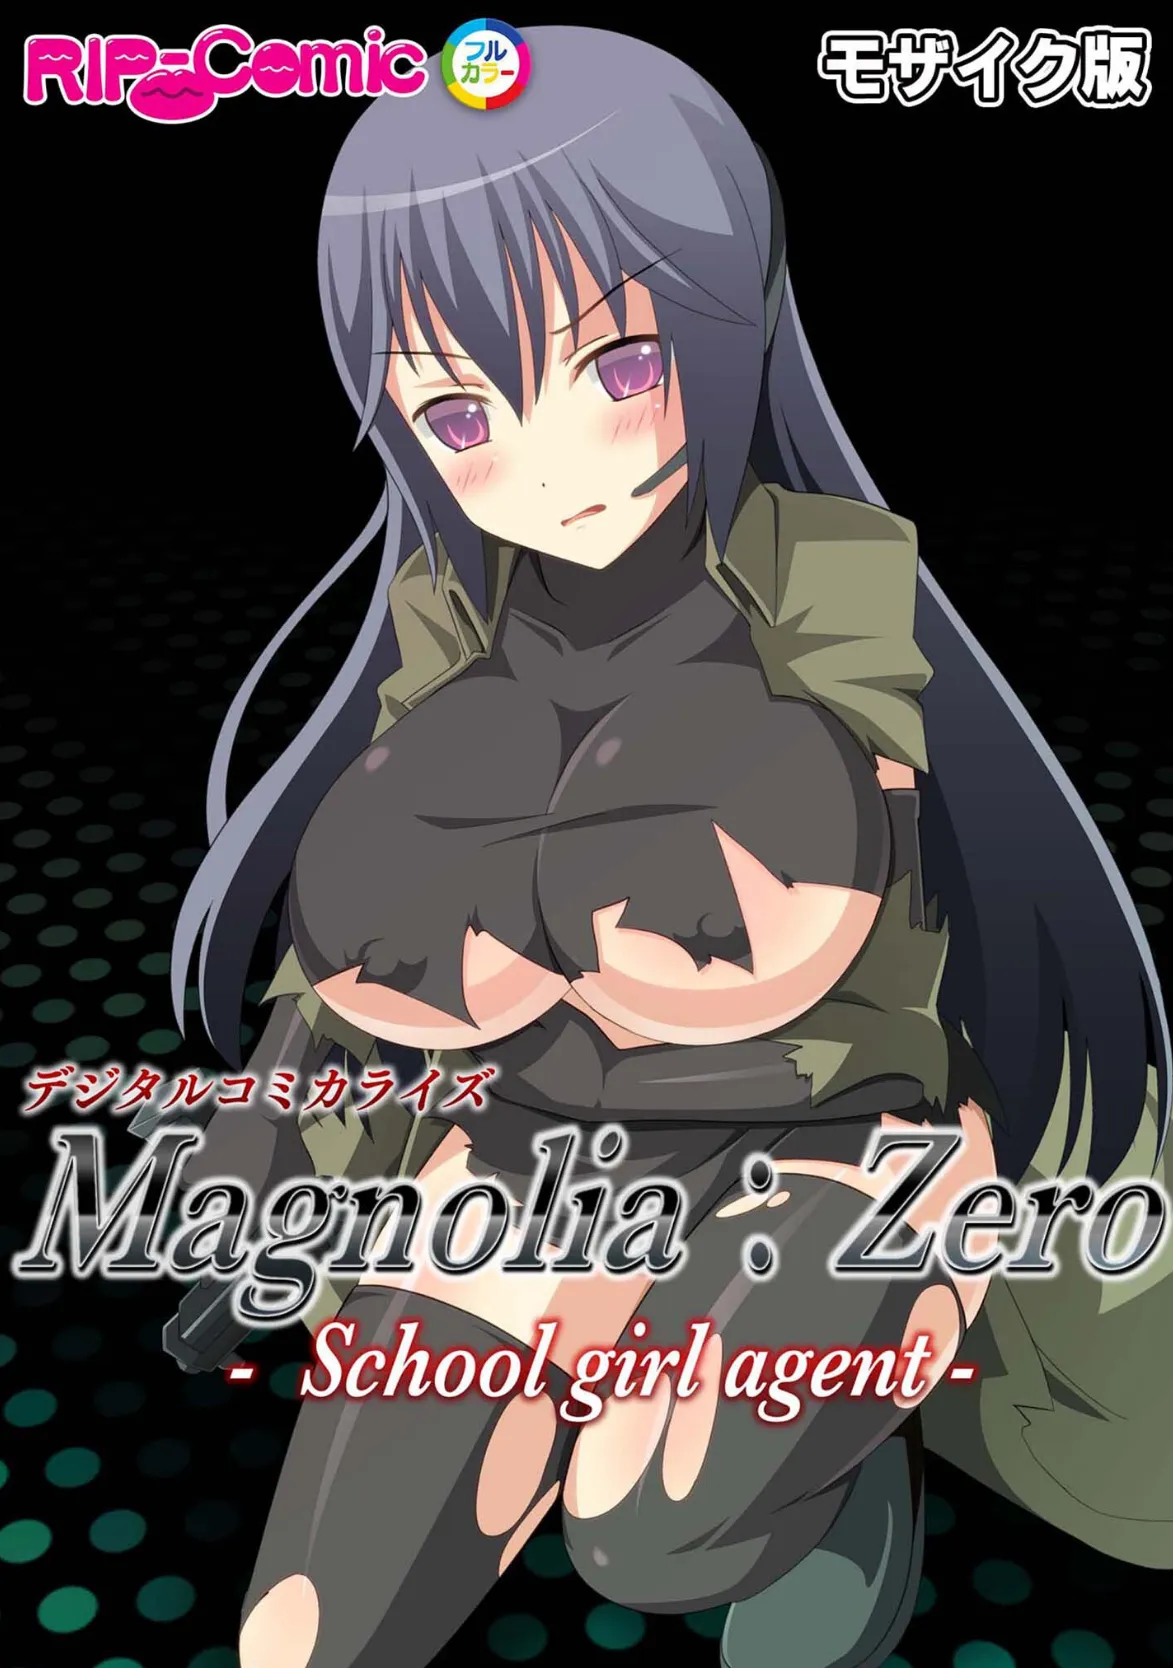 Magnolia:Zero -Schoolgirl agent- デジタルコミカライズ モザイク版